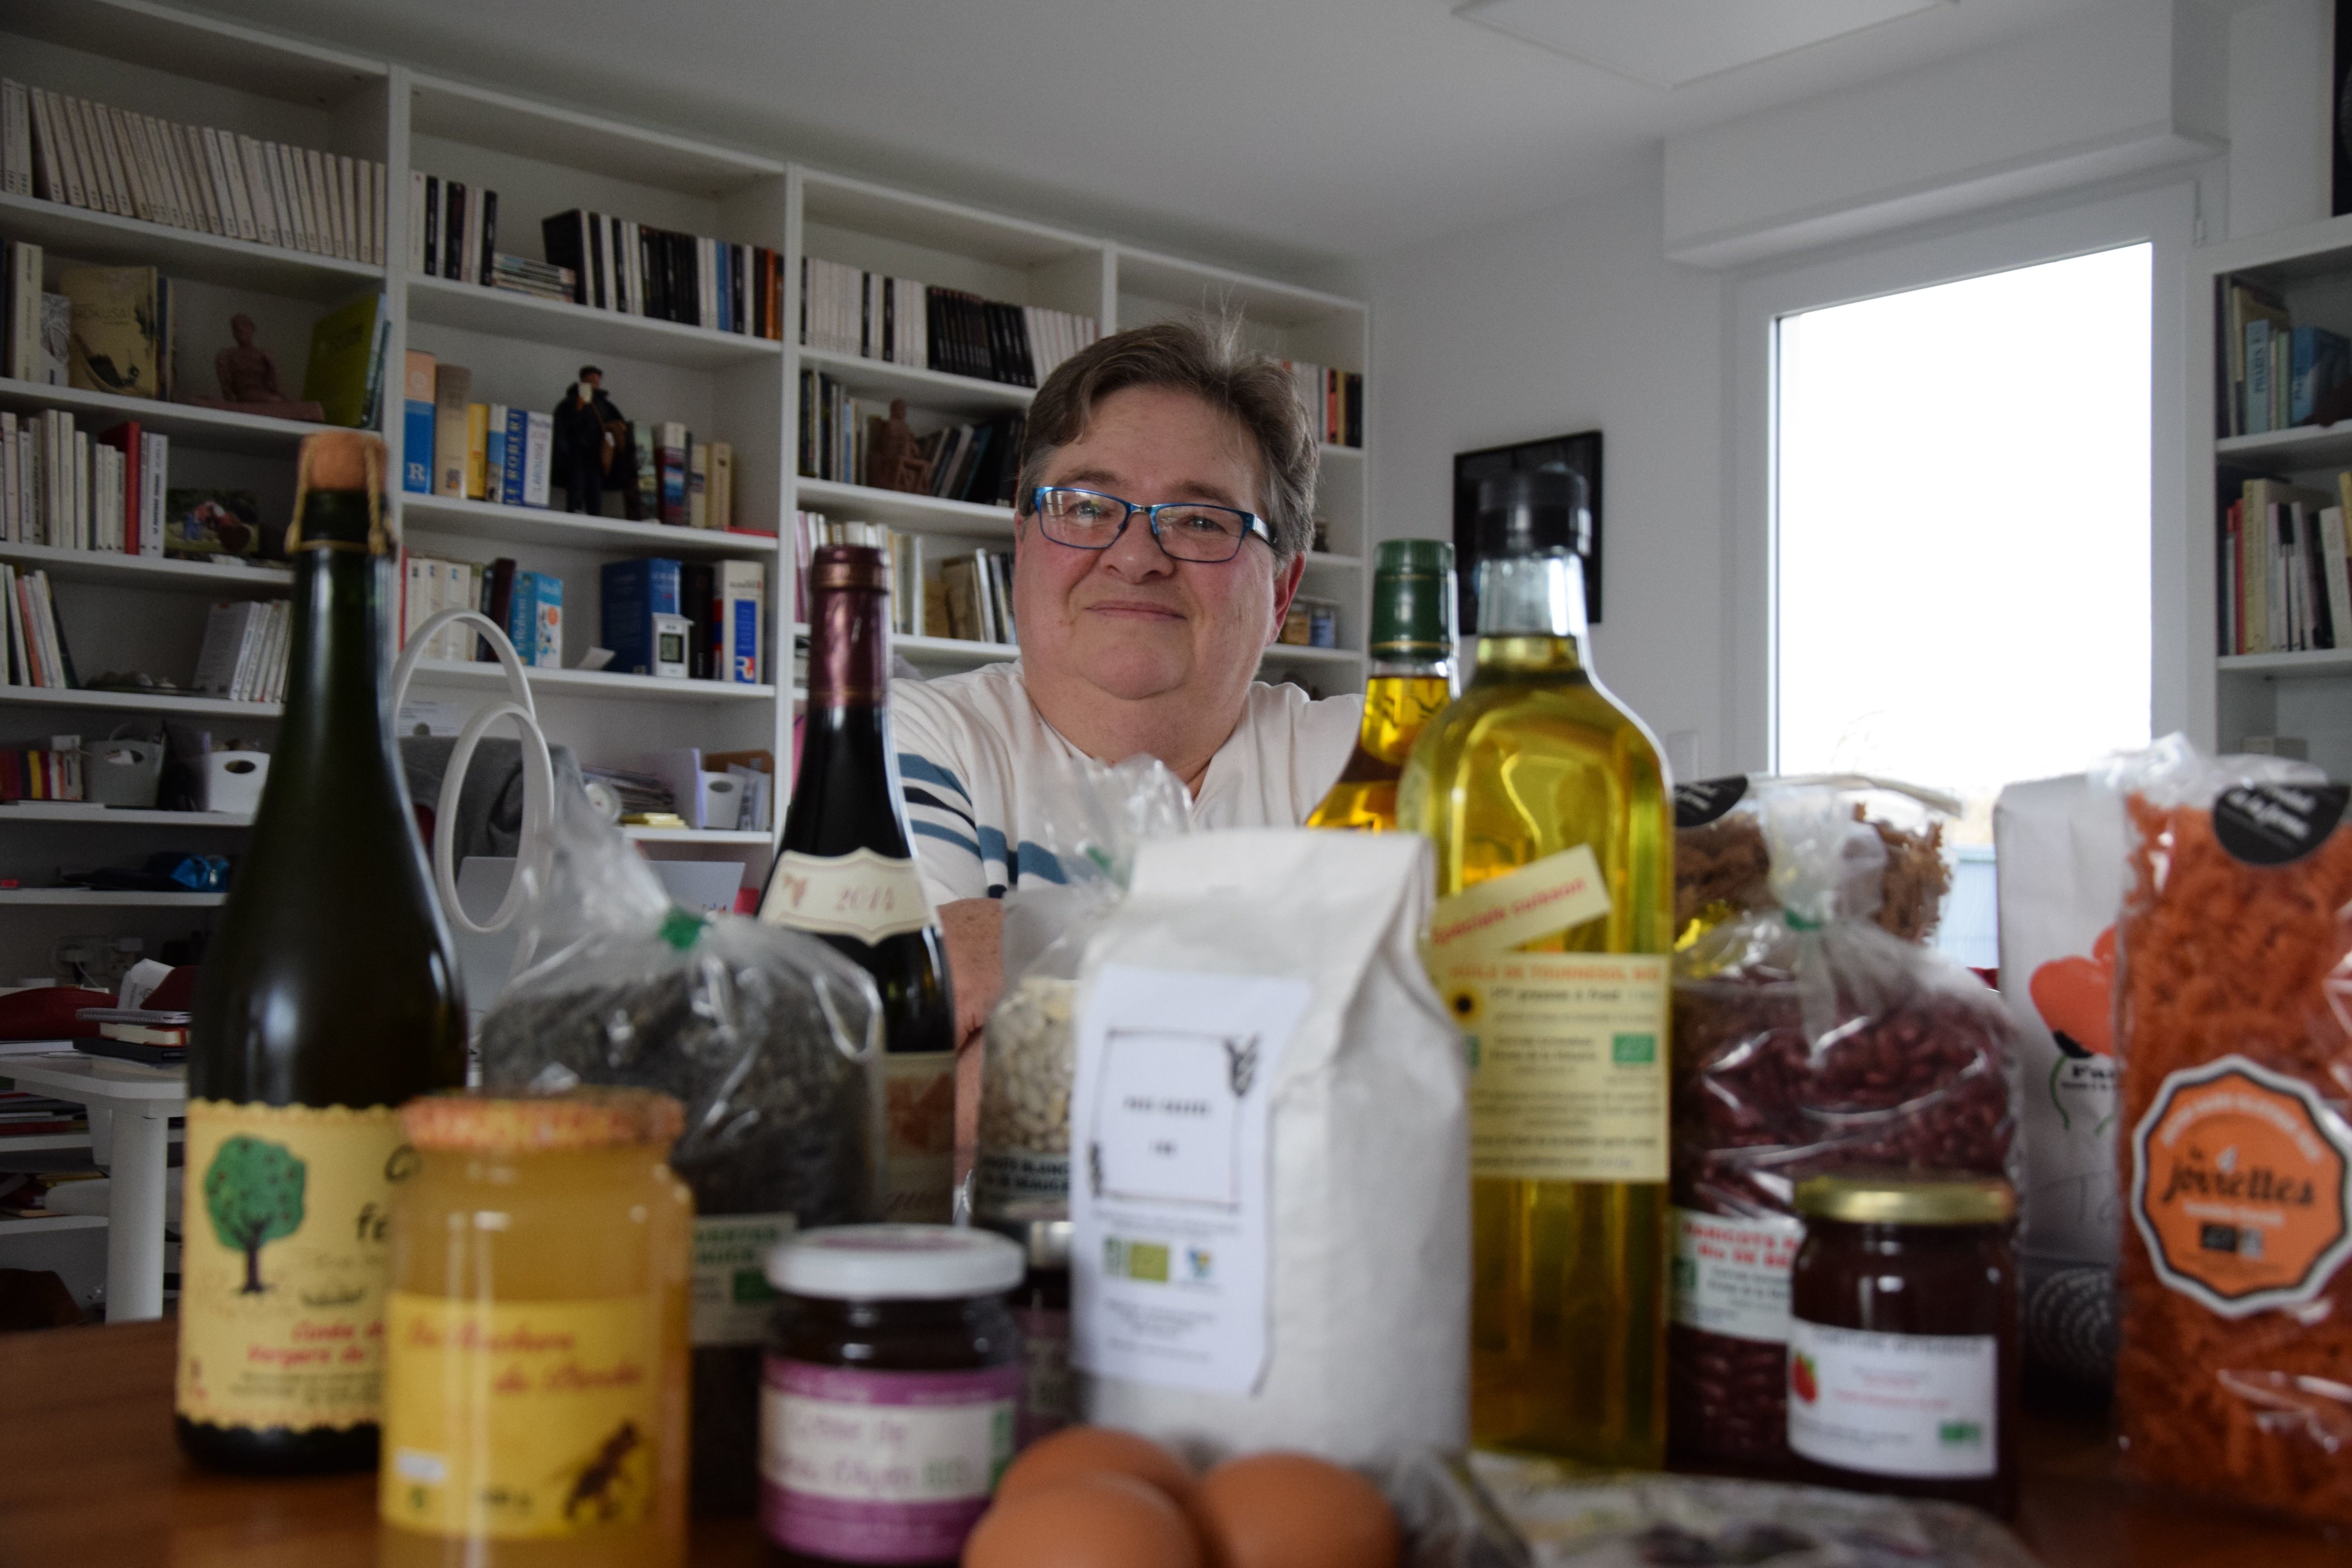 Pâtes, cidre, miel, huile, pois... Françoise Trubert fait ses courses via une Amap (Association pour le maintien de l’agriculture paysanne). LP/Christophe Blondel